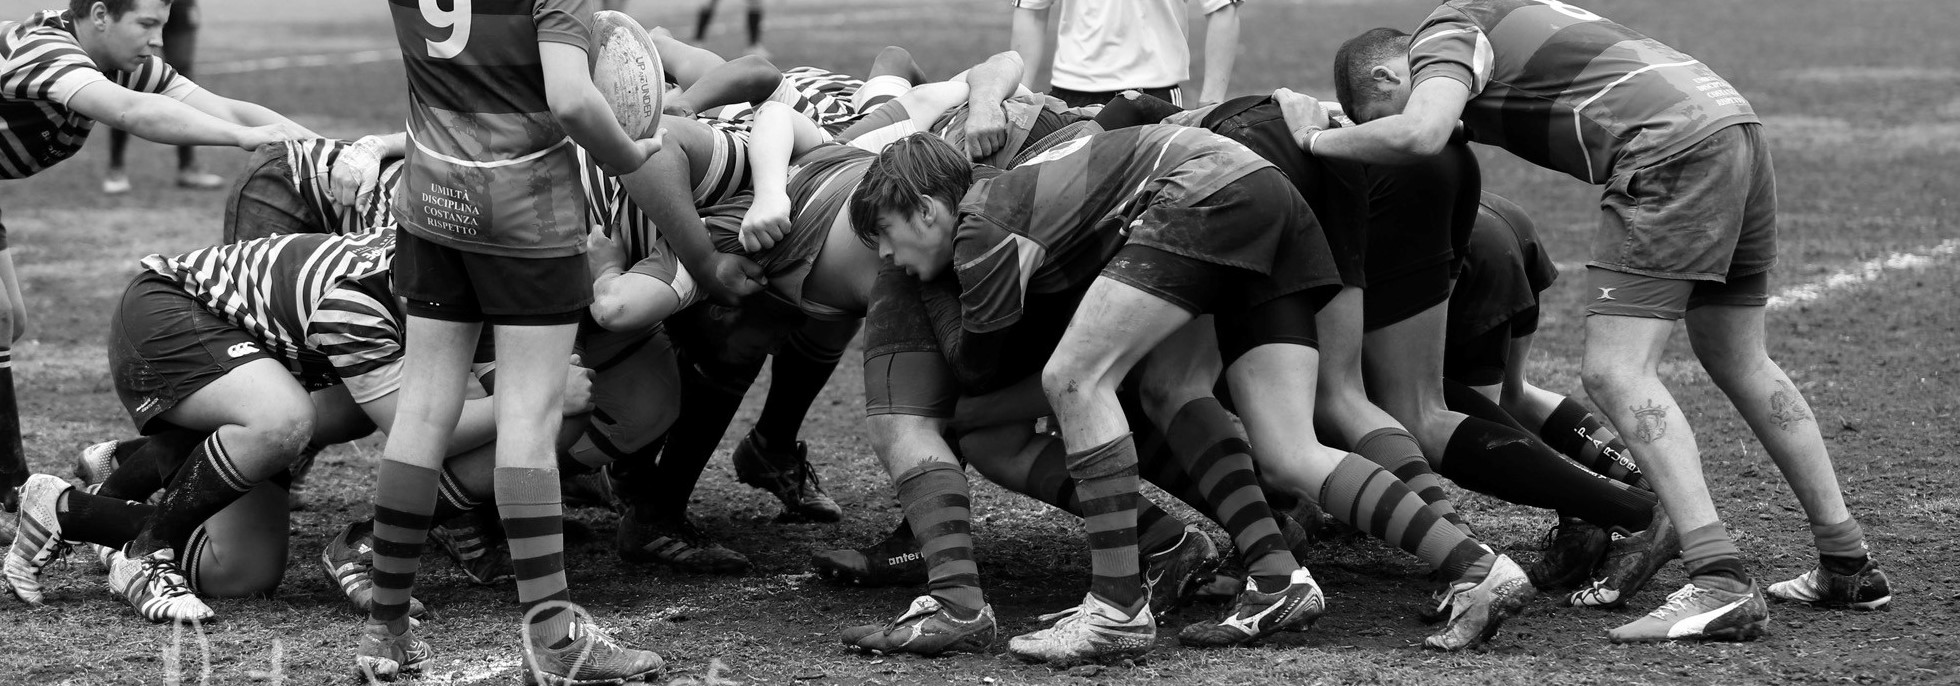 Appia Rugby  – Orari di allenamento